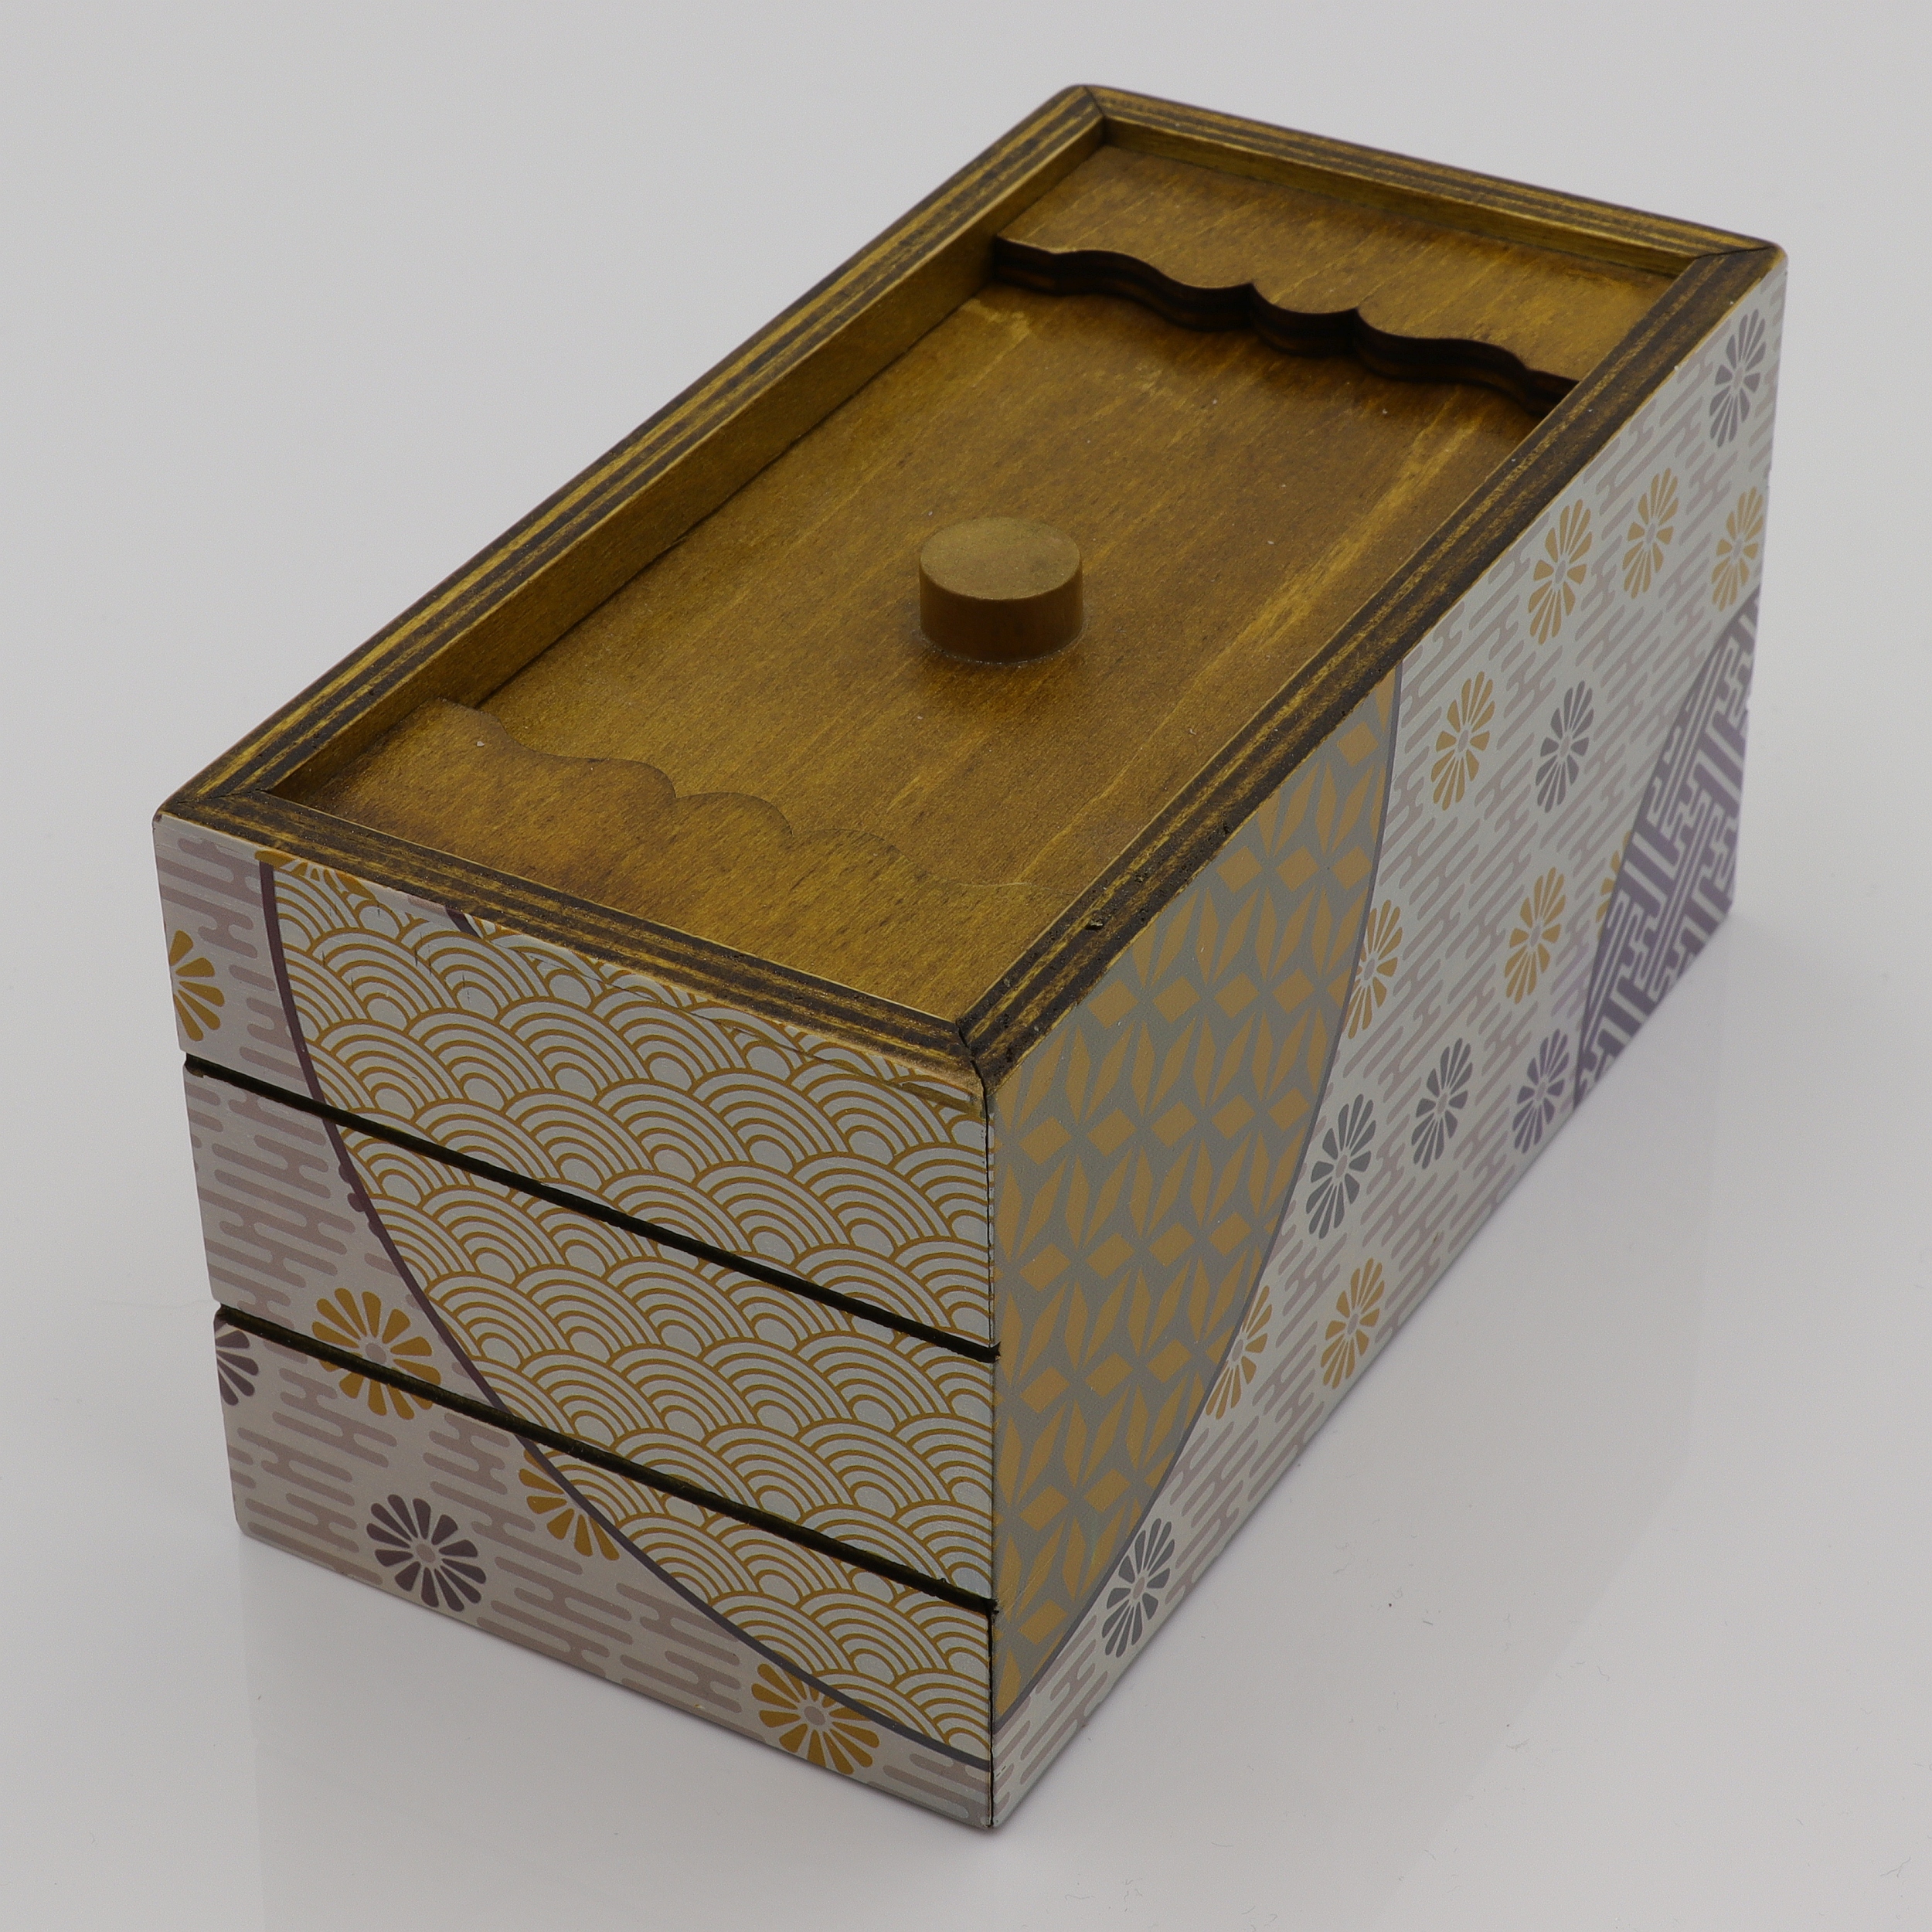 Spring - Trick-Kiste aus Holz - Puzzle Box - Secret Opening Problem